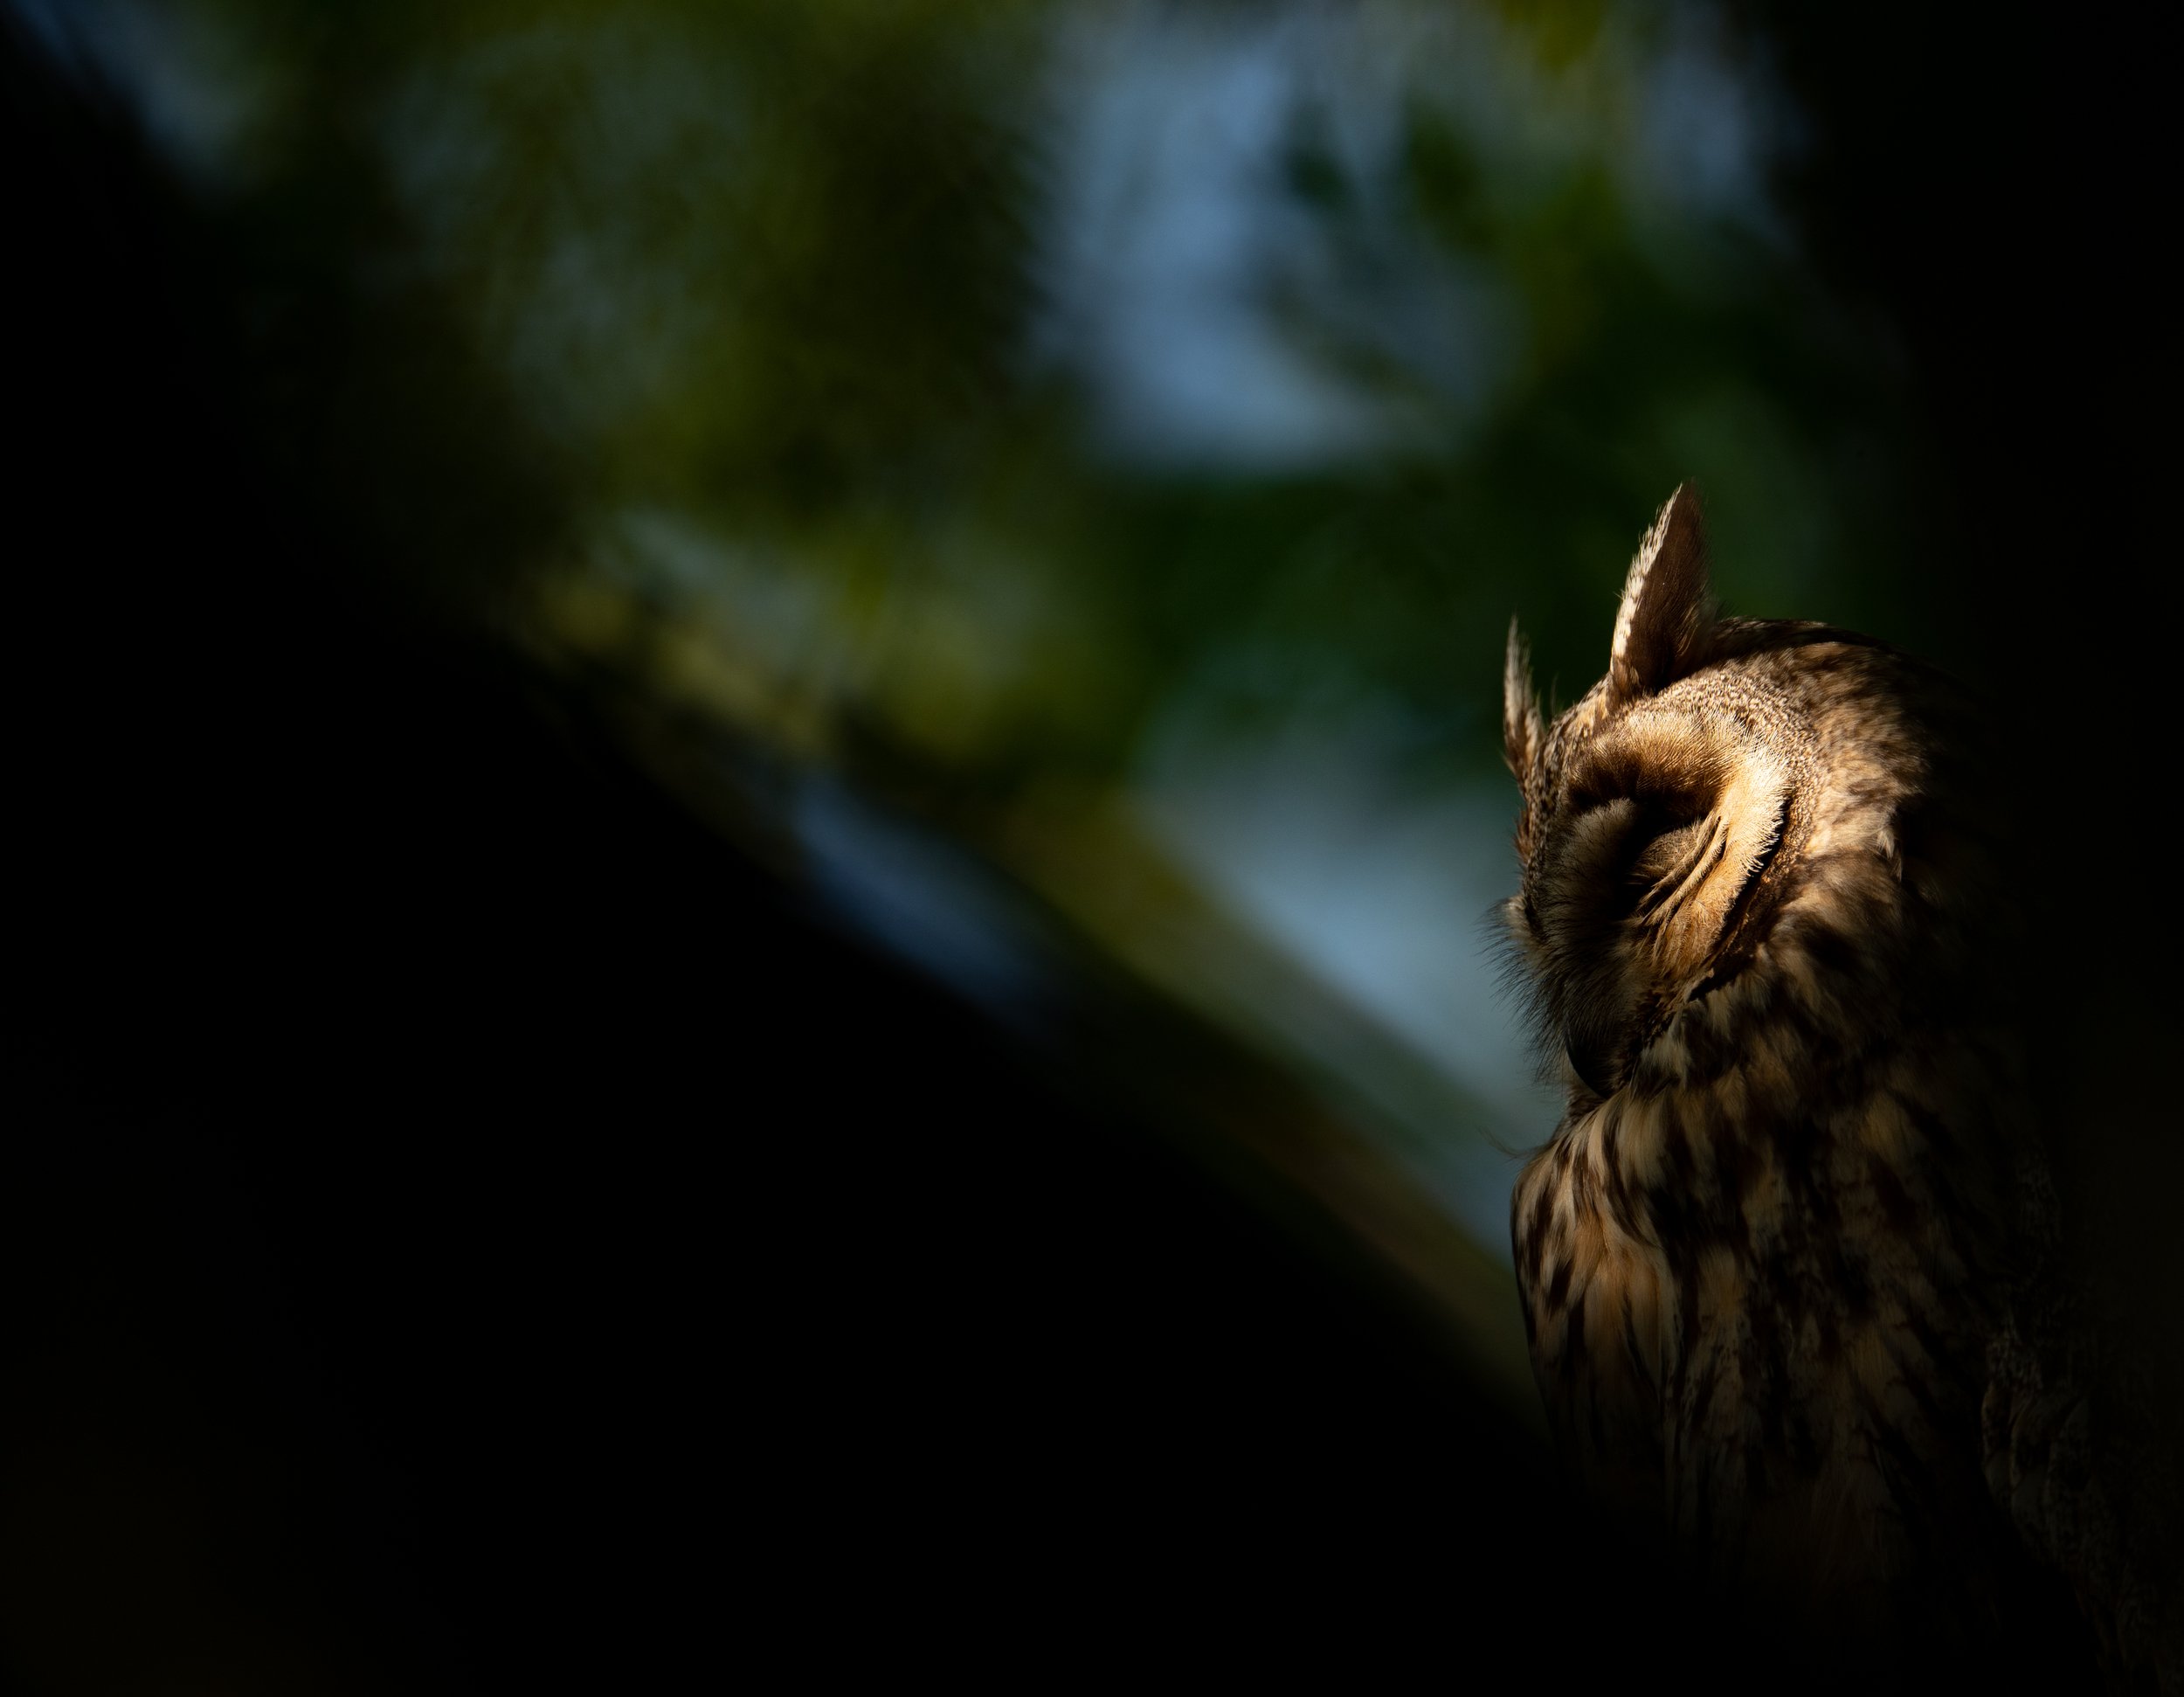  Ebenfalls ein Altvogel in der Abendsonne (wenn auch an einem anderen Tag und in einem anderen Baum als im oberen Bild. Durch Unterbelichten und einbeziehen eines harten Vordergrundes wird das sonnenbeschienene Gesicht des Vogels isoliert. 